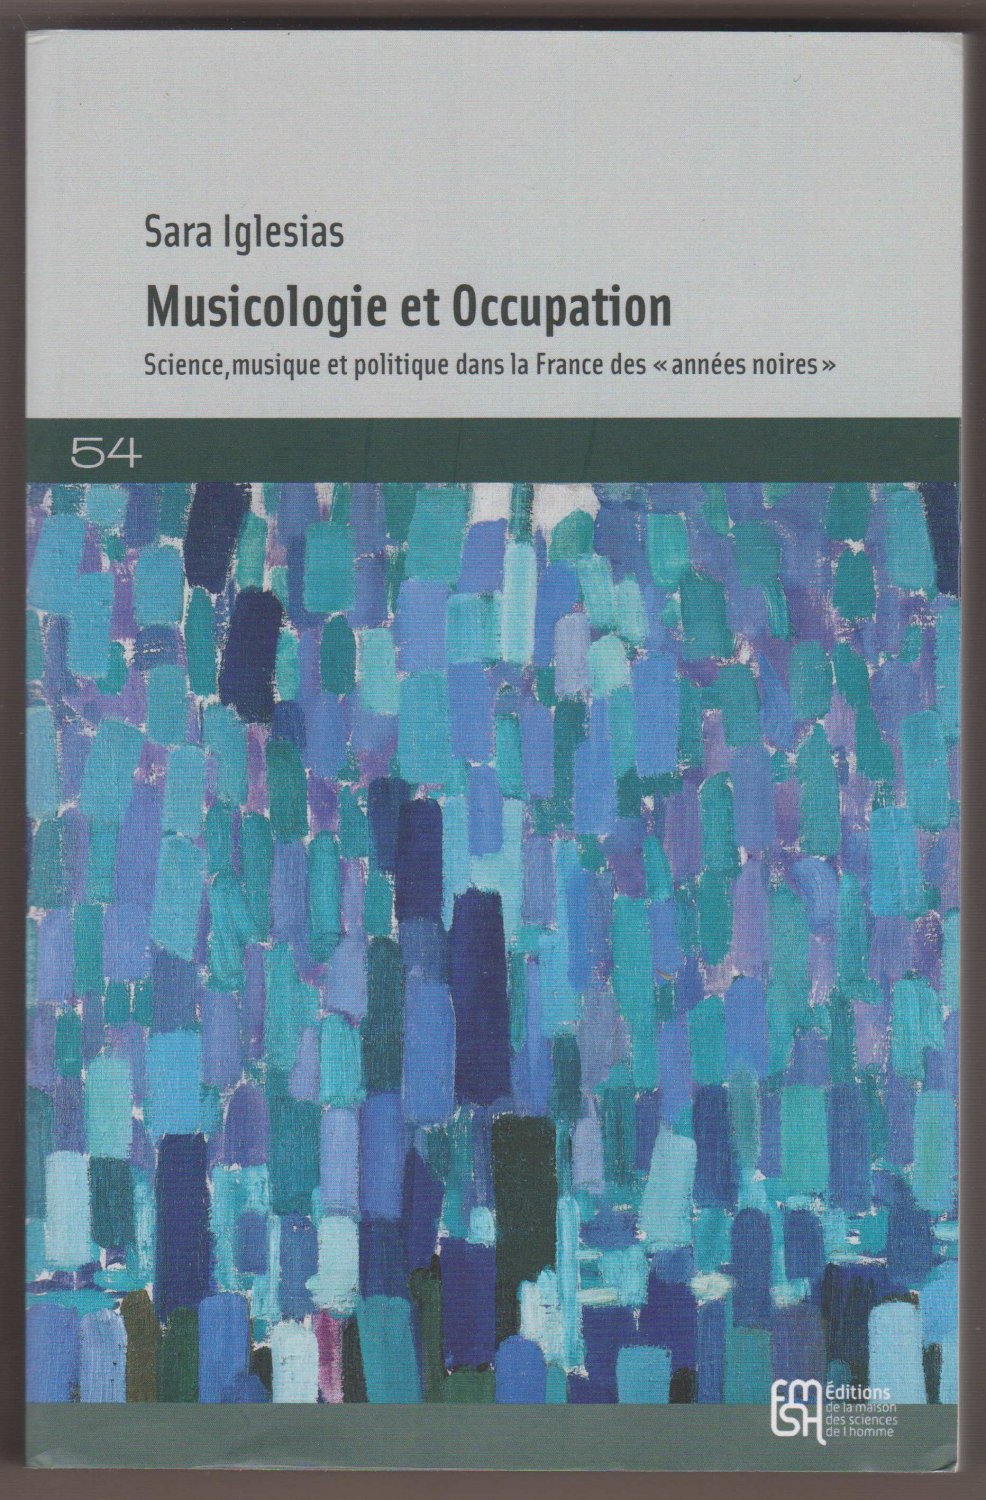 IGLESIAS, Sara:  Musicologie et Occupation. Science, musique et politique dans la France des "années noires". 